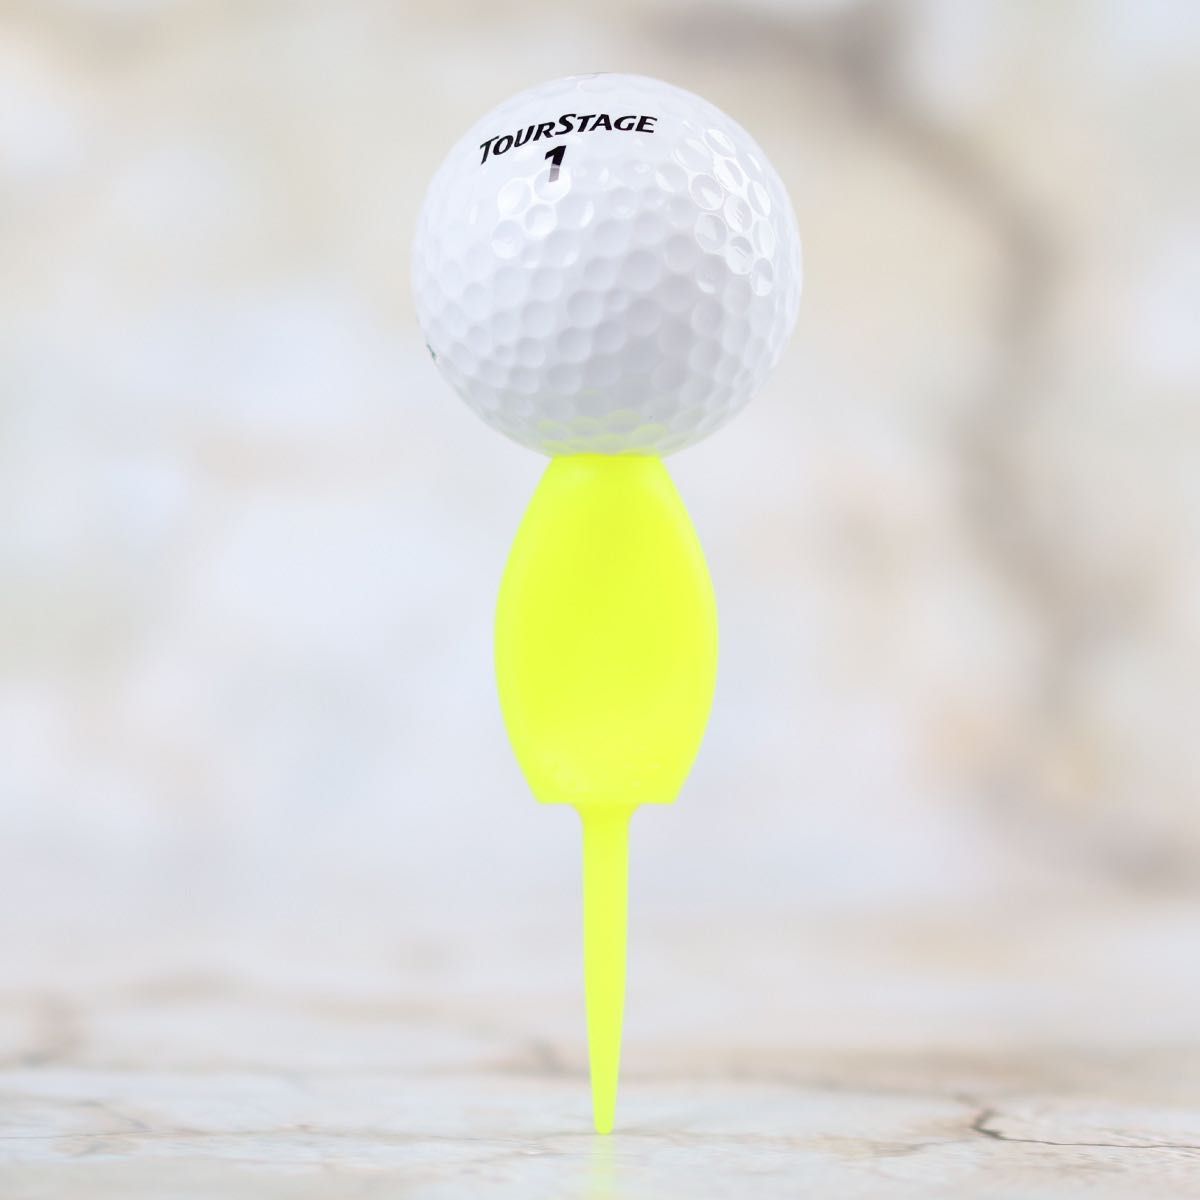 4本セット 日本製 パリティー 蛍光色 ゴルフボール 跡 ゴルフティー ティーペグ グリーンフォーク ボールマーク b098m